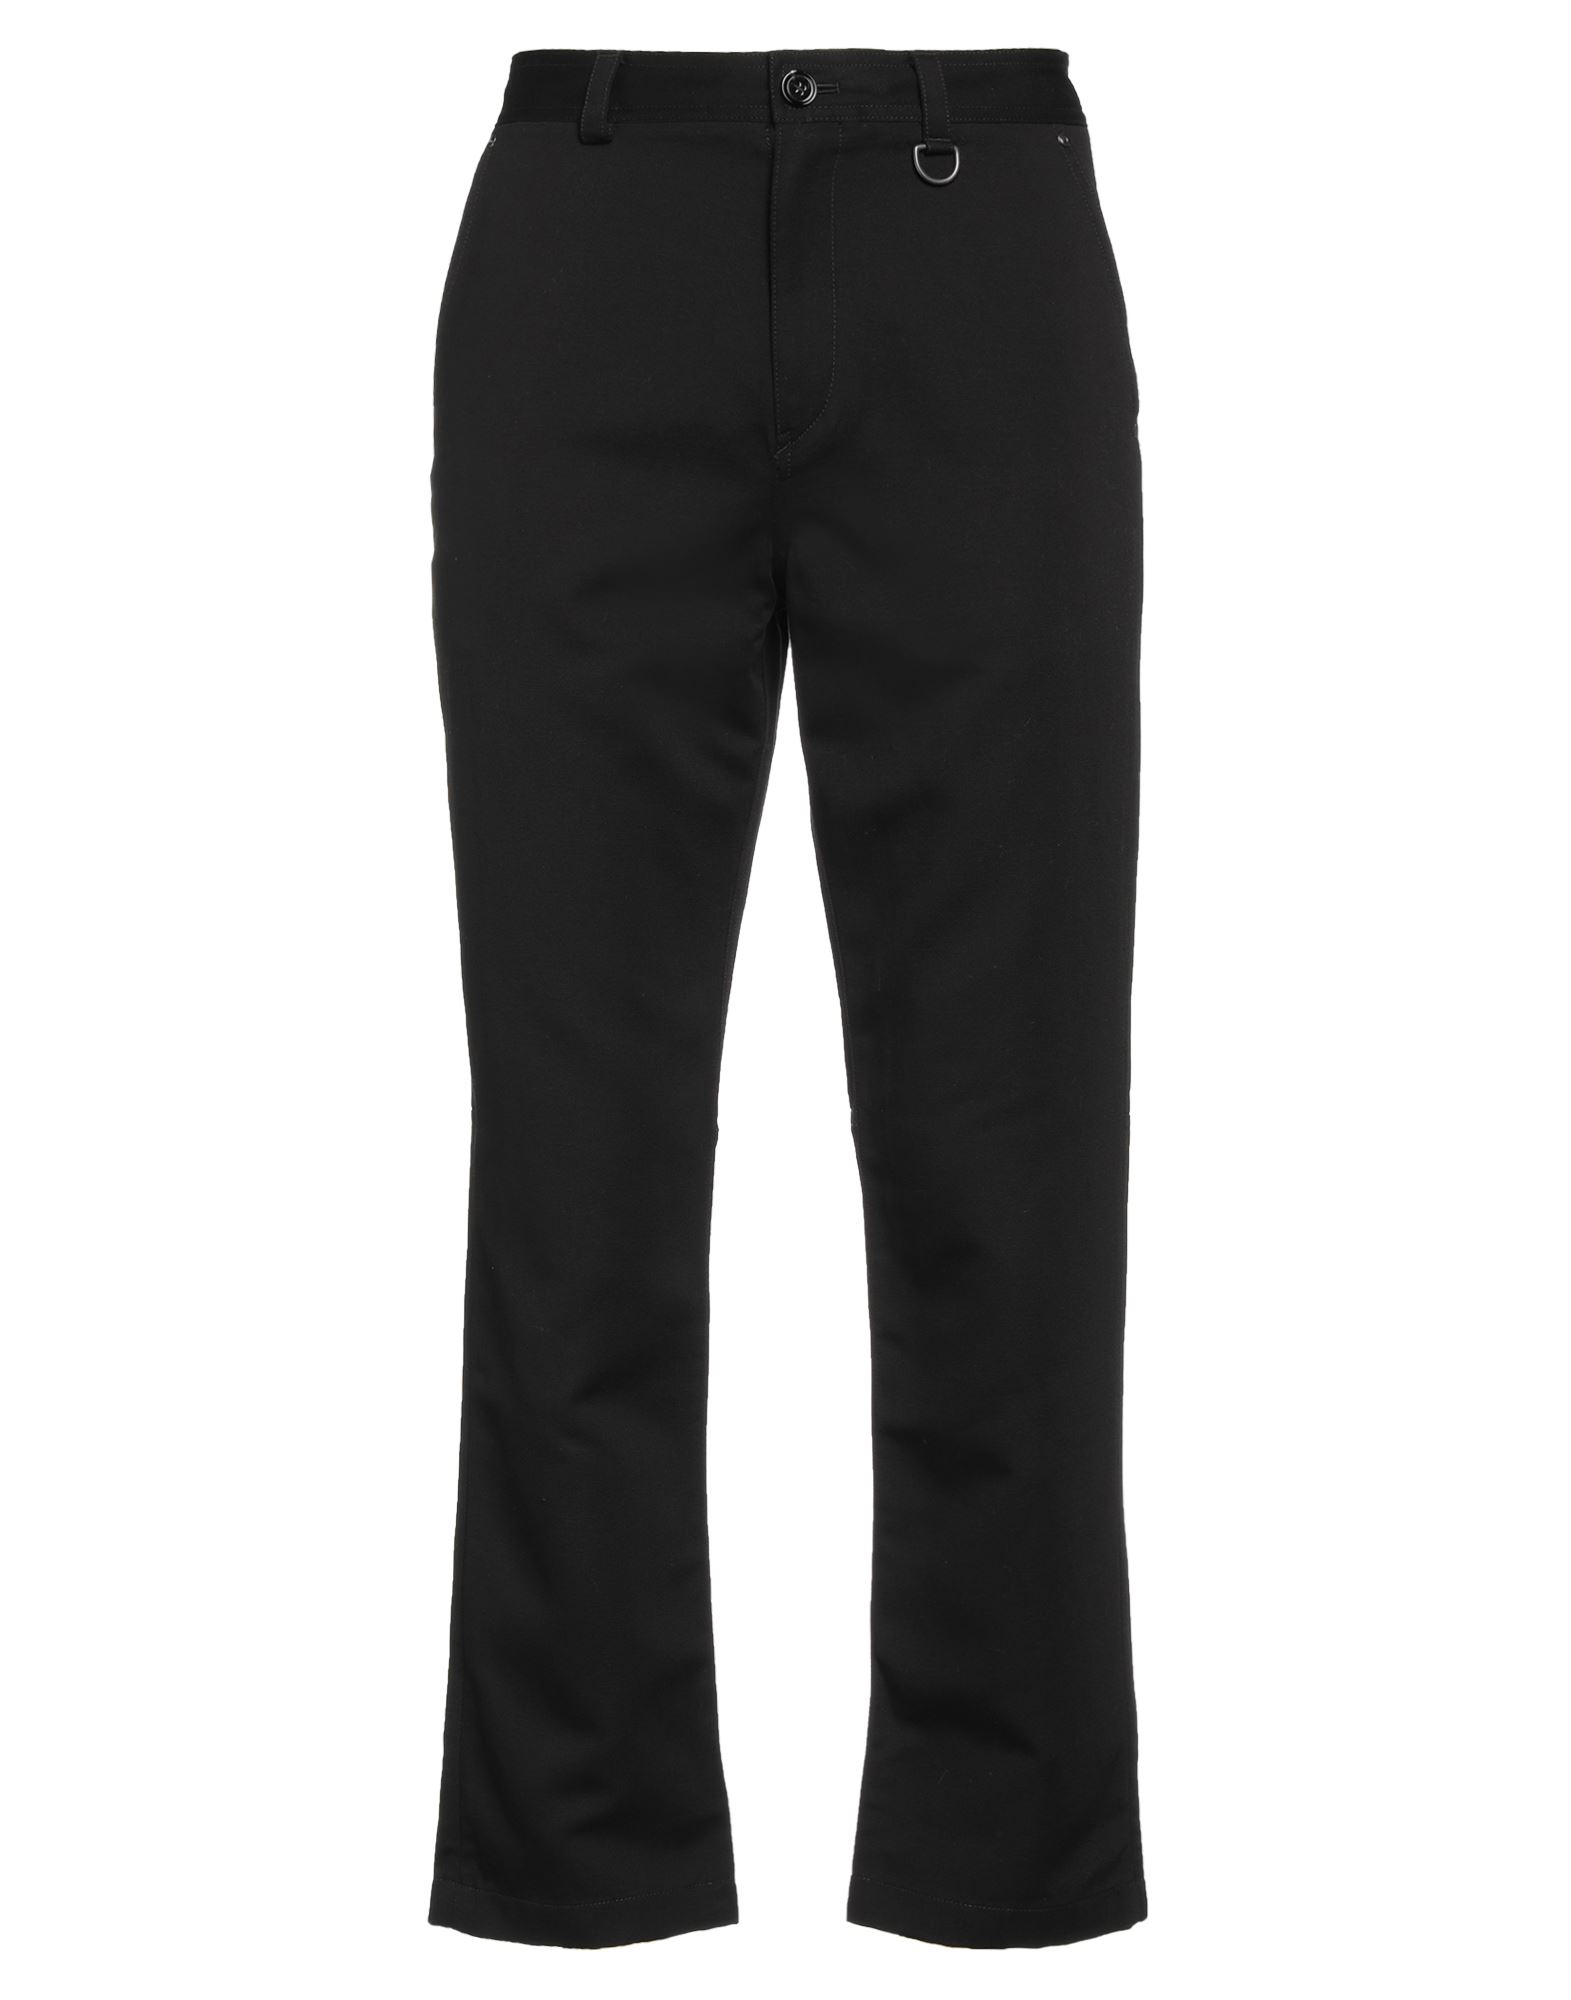 Burberry Man Pants Black Size 32 Cotton, Linen